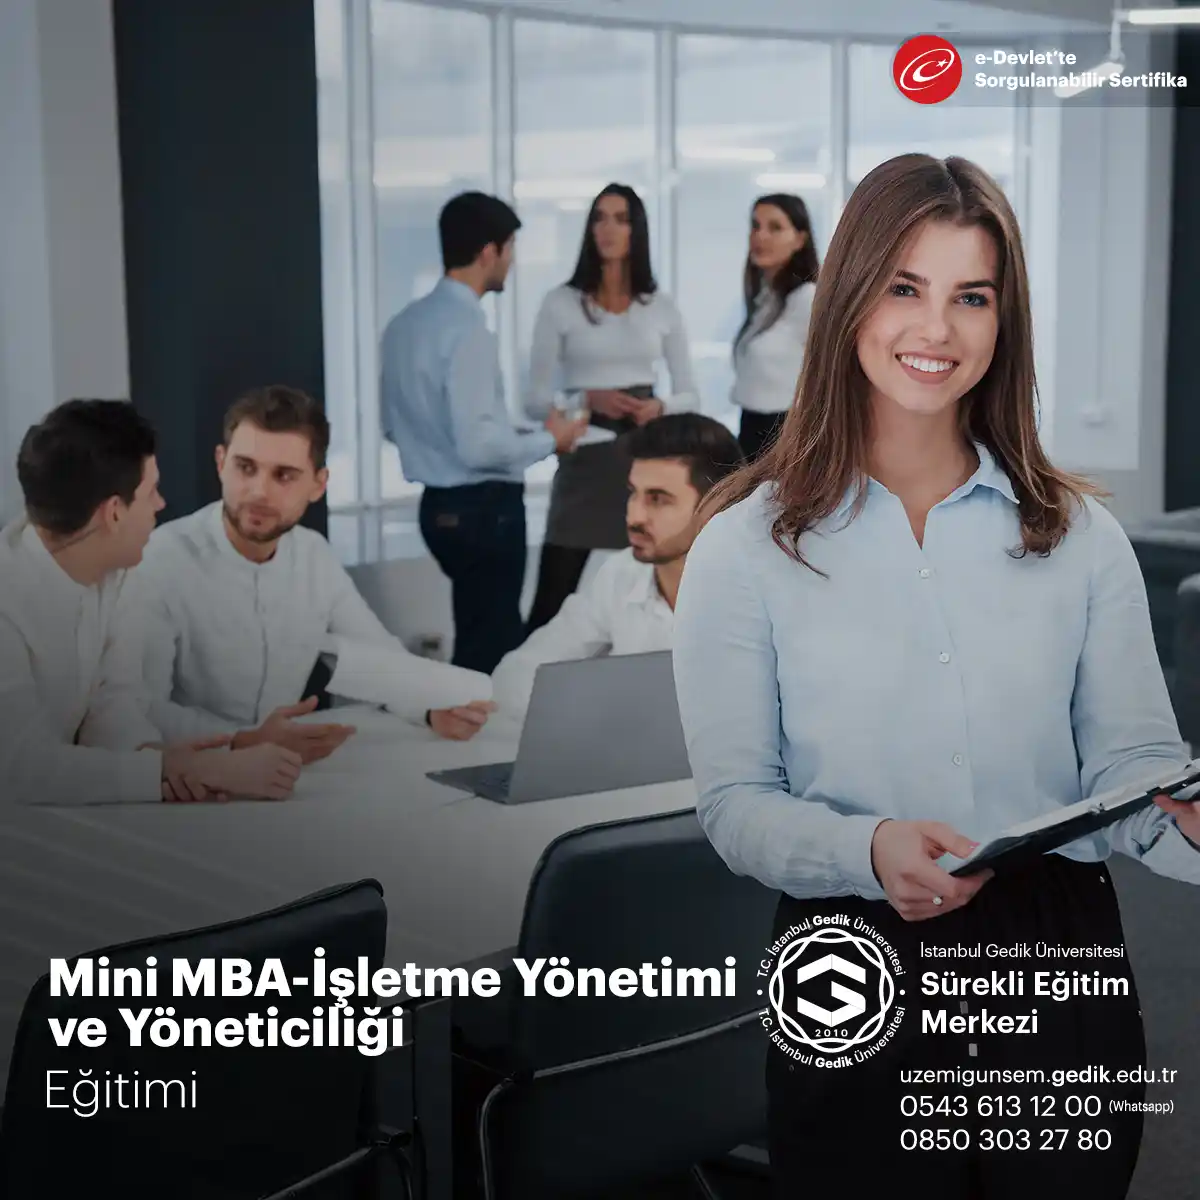 Mini MBA İşletme Yönetimi ve Yöneticiliği, katılımcılara İşletme Yönetimi ve Yöneticiliği için gerekli kavram ve terimlerin tanıtılması adına hazırlanmıştır.